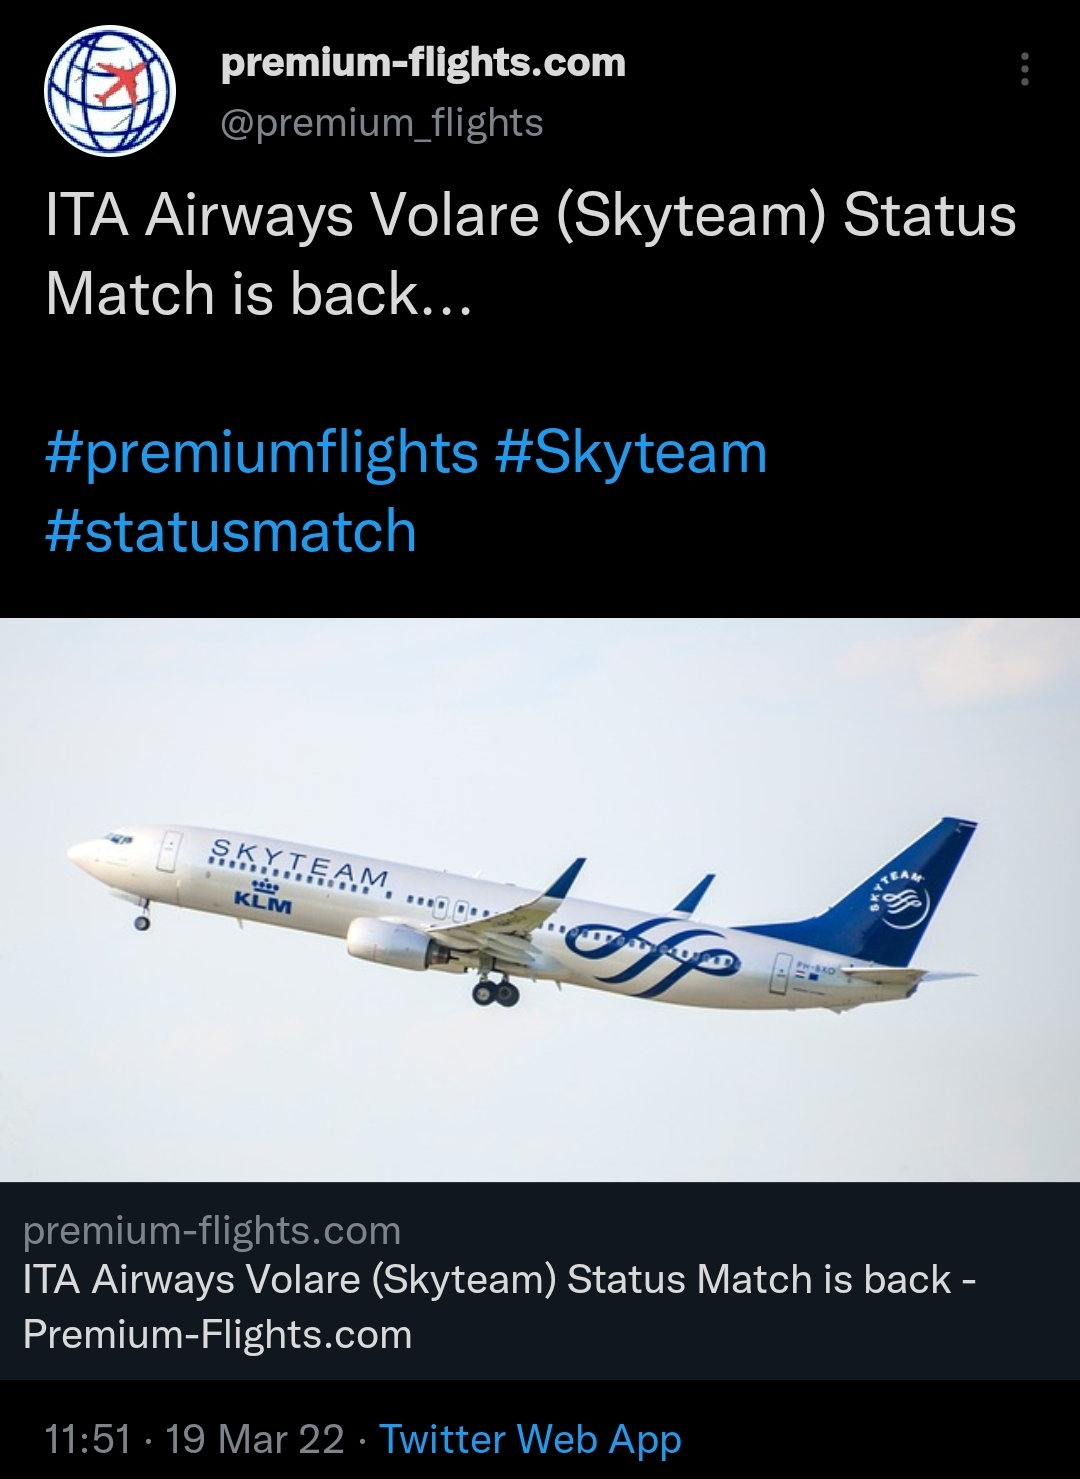 SkyTeam Alliance